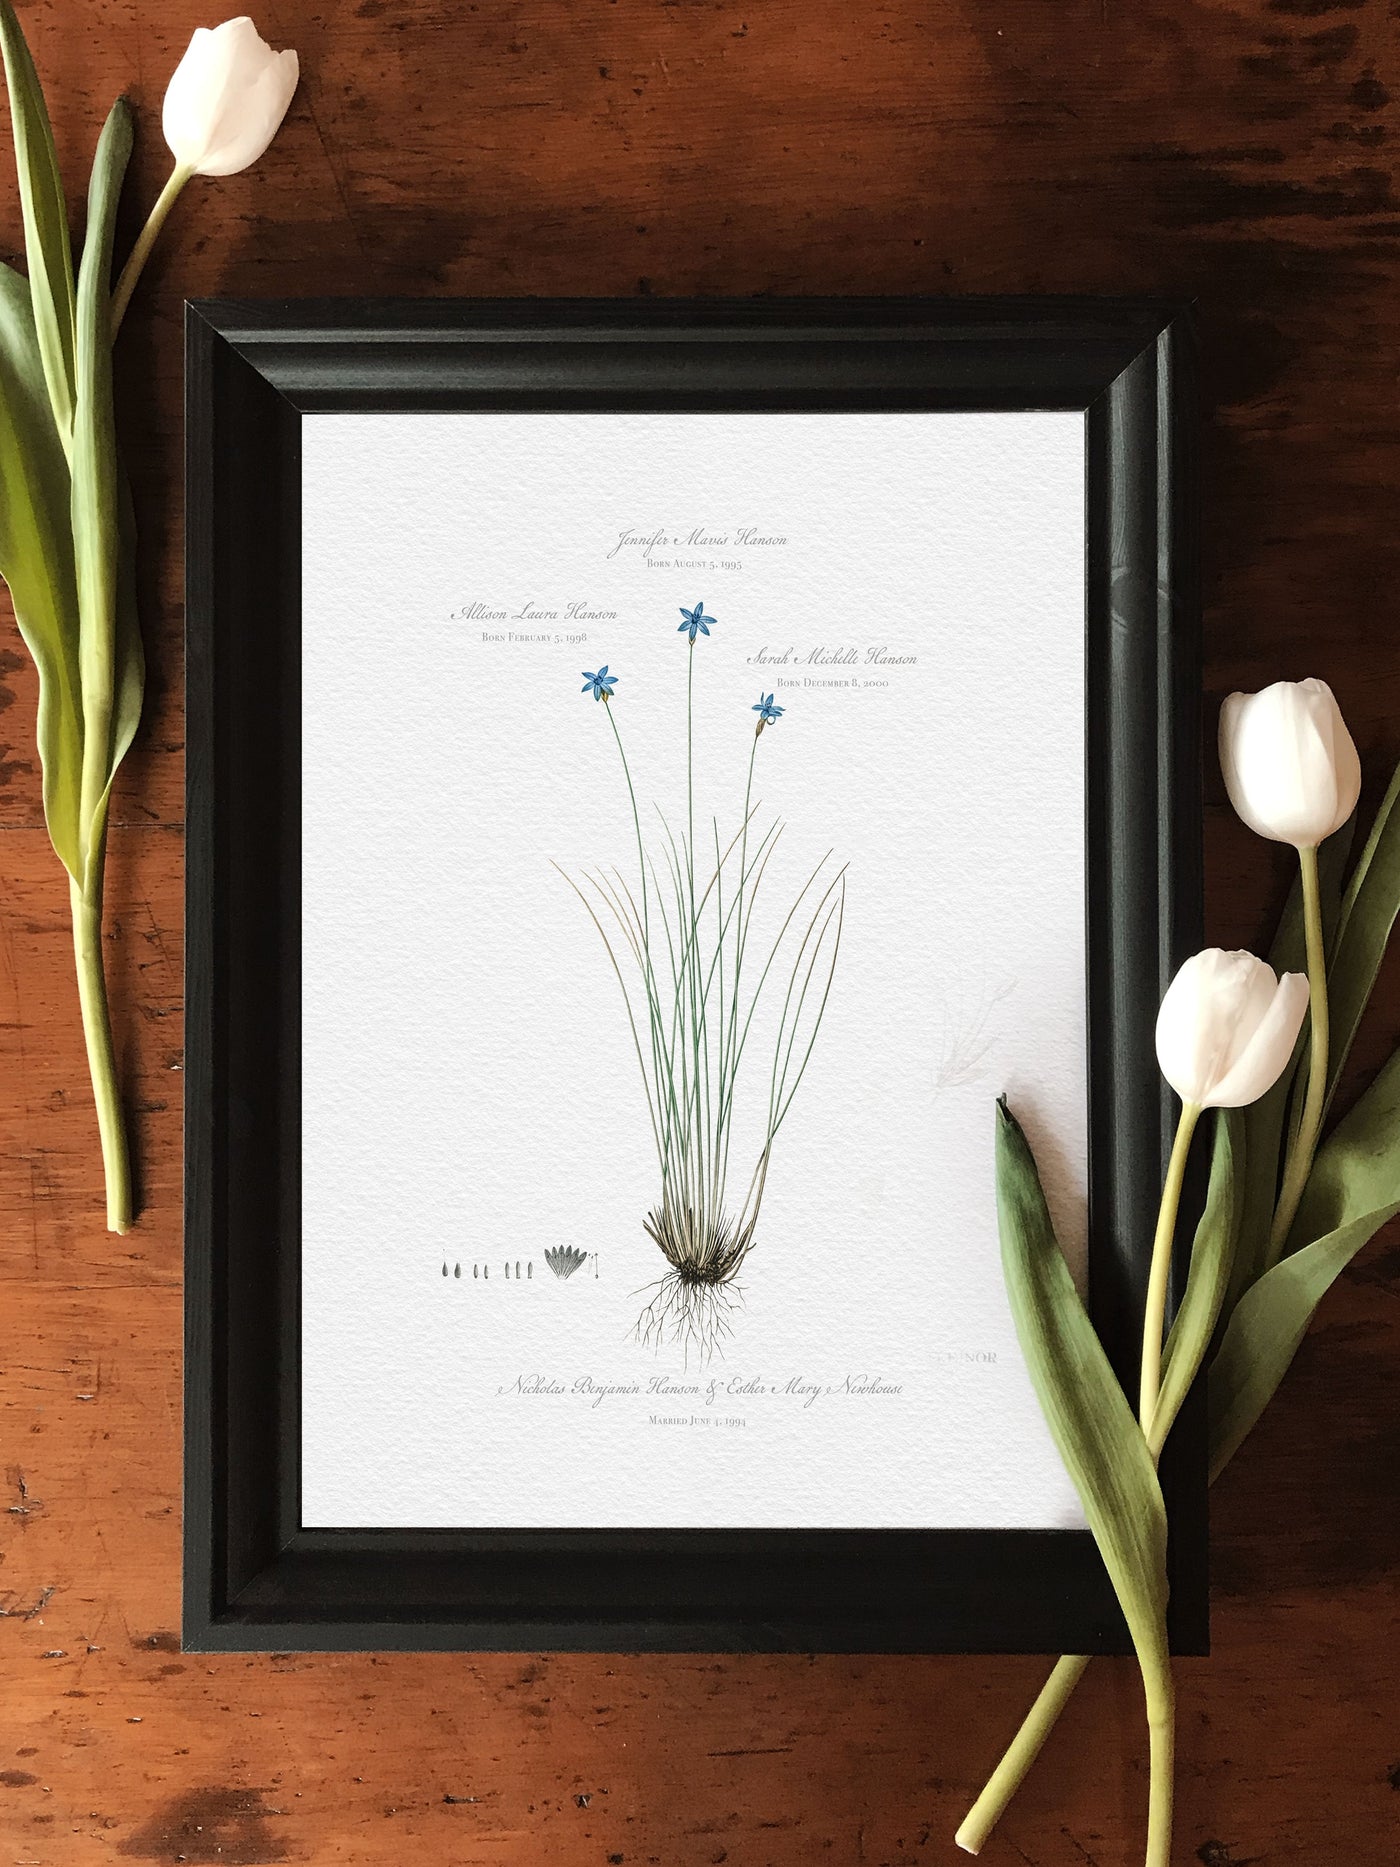 VINTAGE BLUE LILY FAMILY BOTANIC - lifestyle shot with tulips